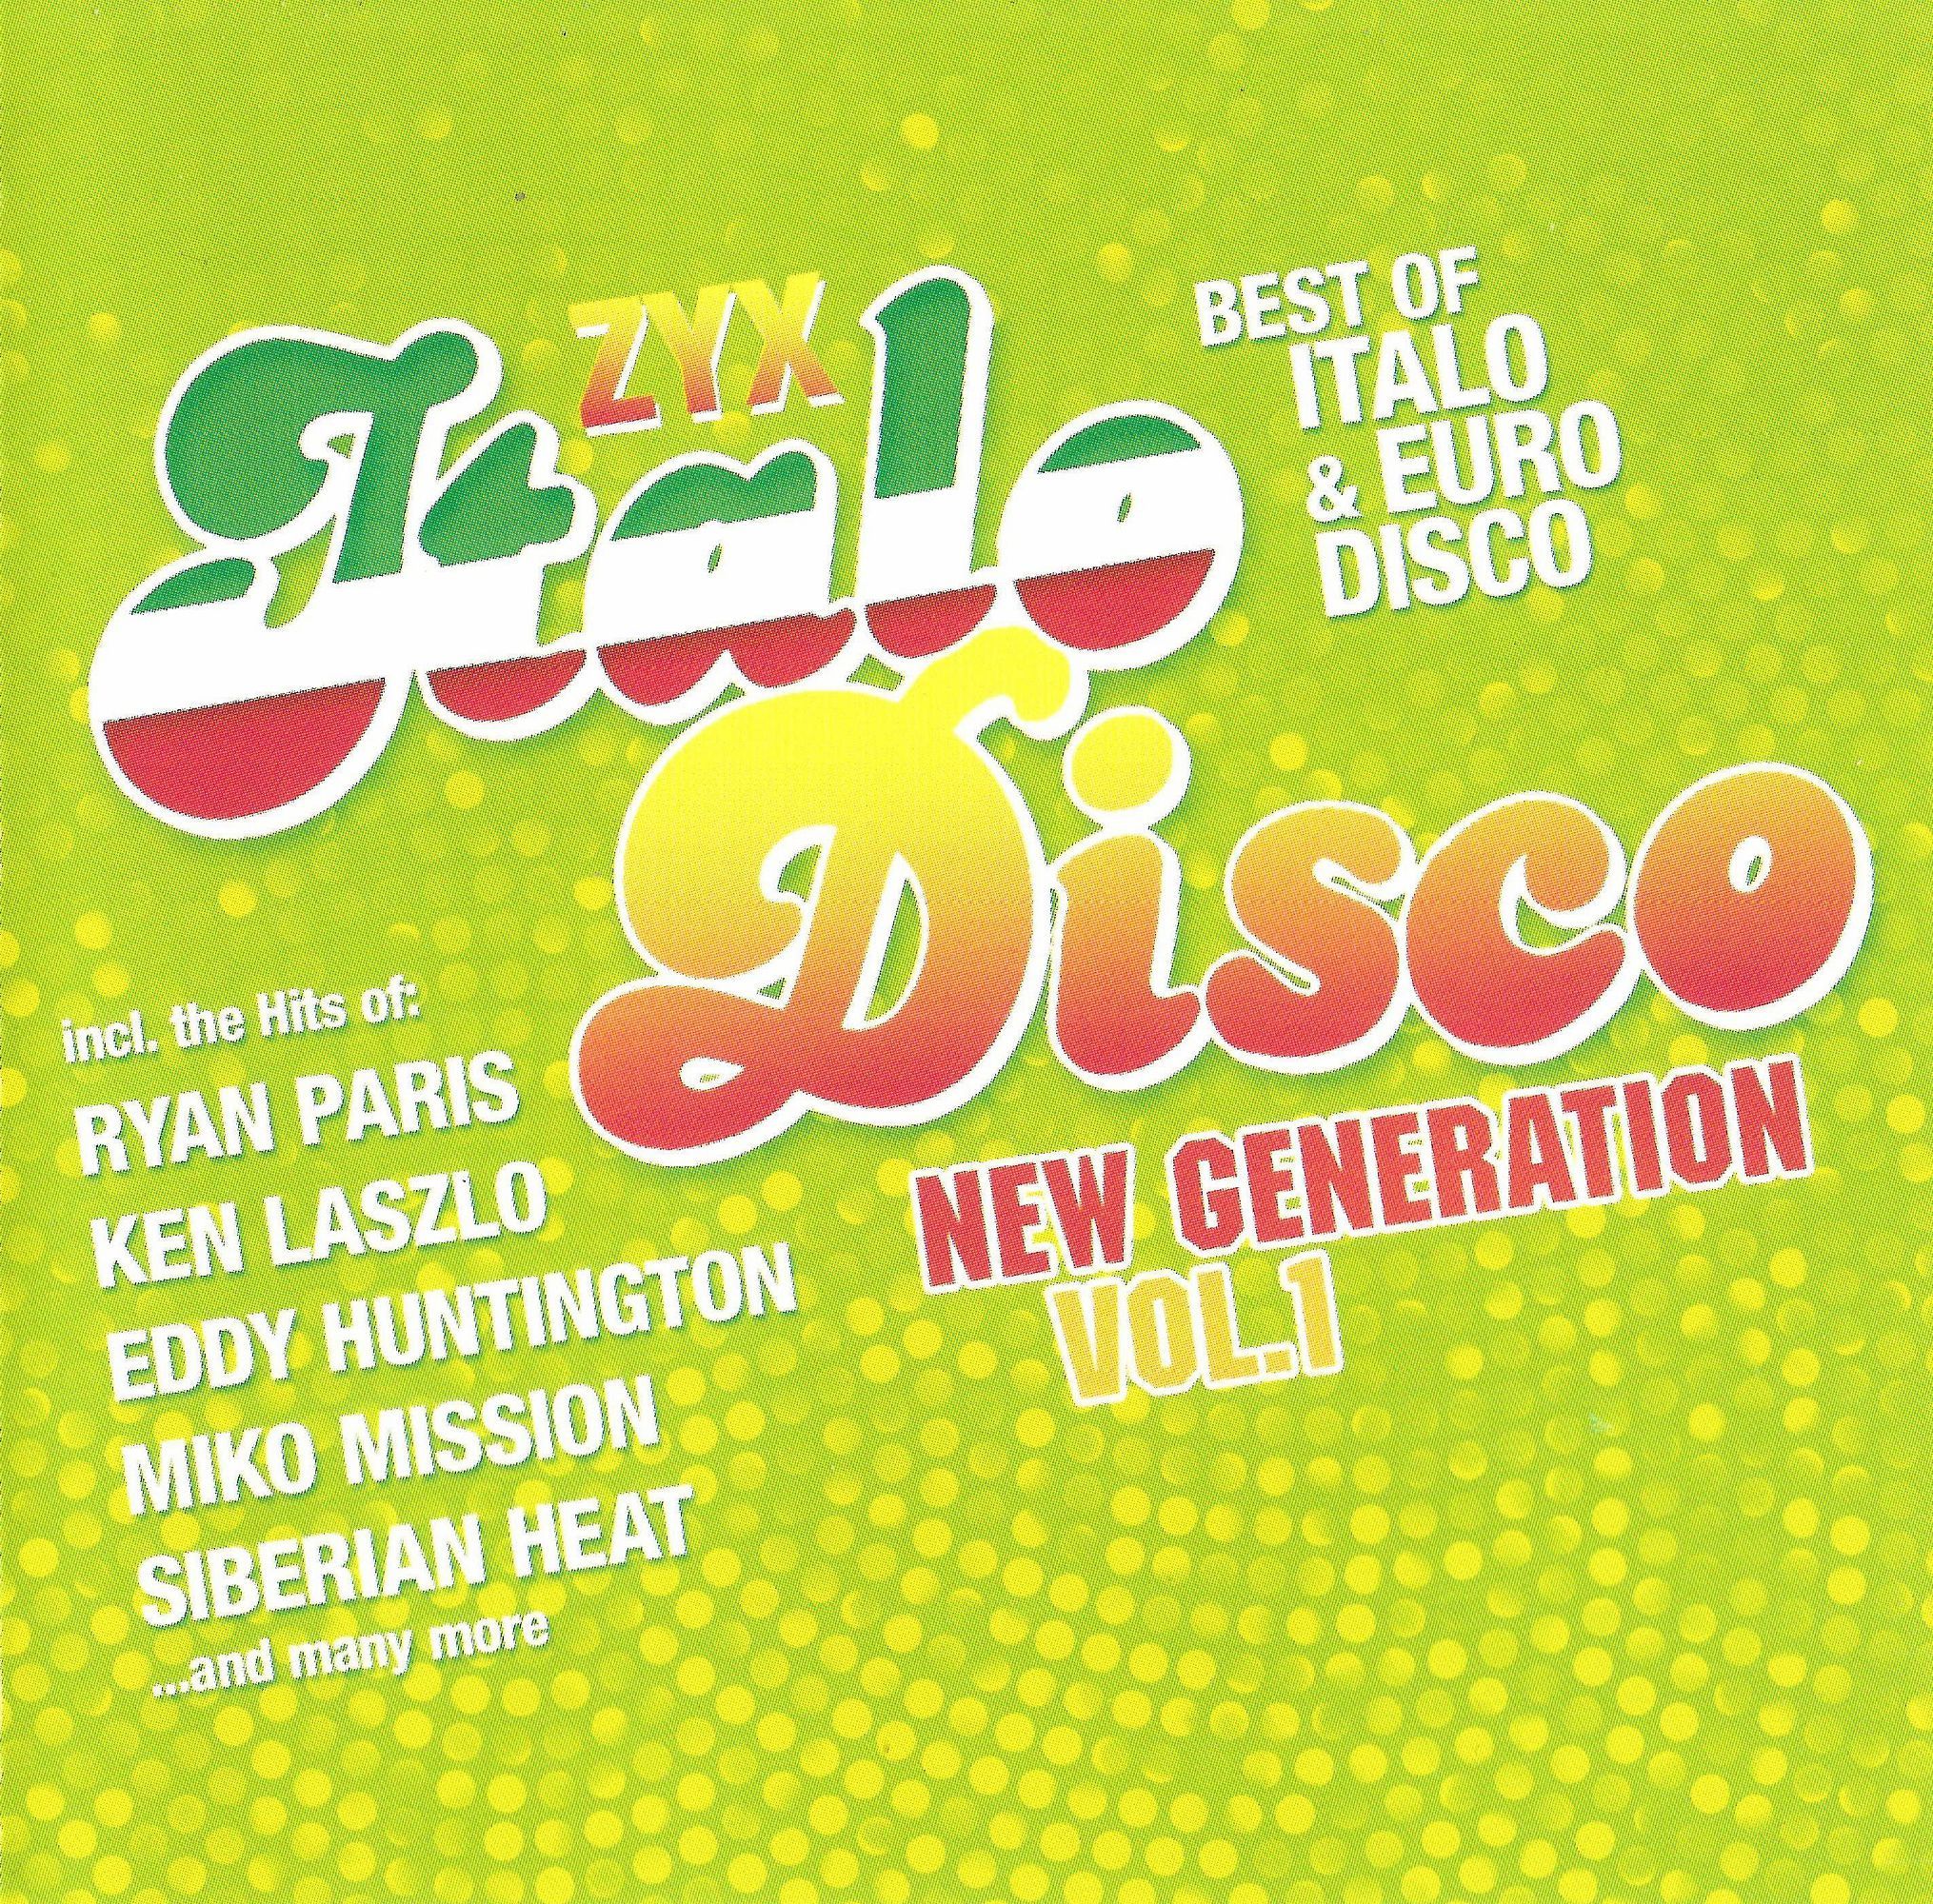 Zyx italo disco new. ZYX Italo Disco New Generation Vol.2 CD 1. ZYX Italo Disco New Generation Vol. 10. Italo Disco New Generation Vol 10 cd1.